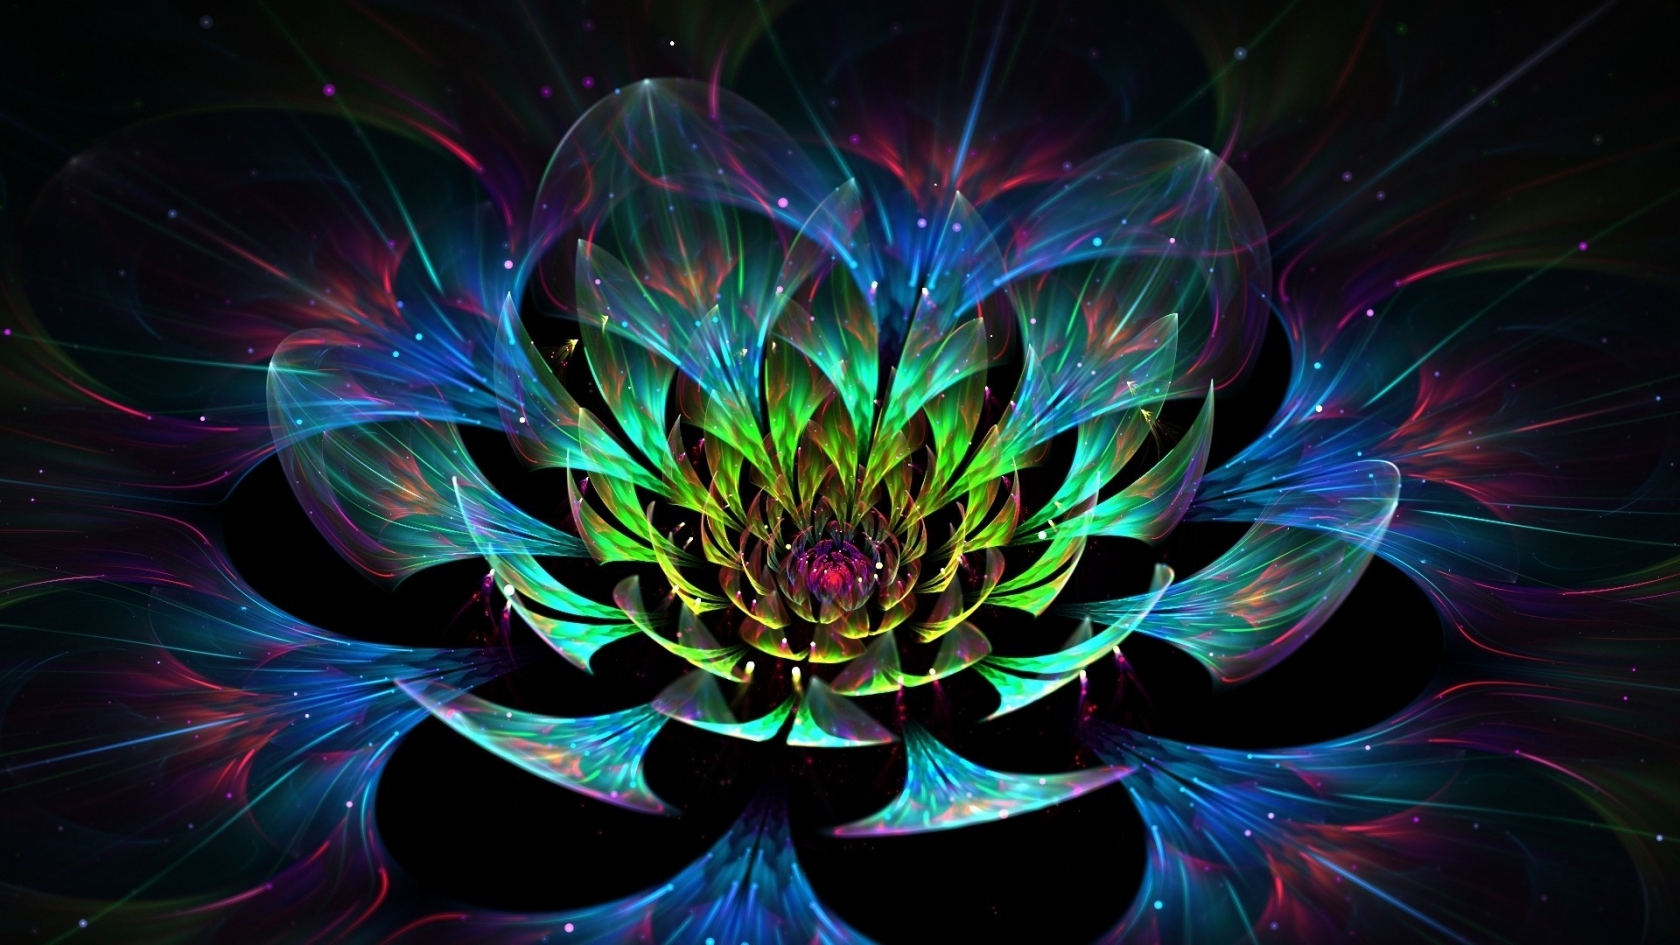 3D Lotus Flower for 1680 x 945 HDTV resolution